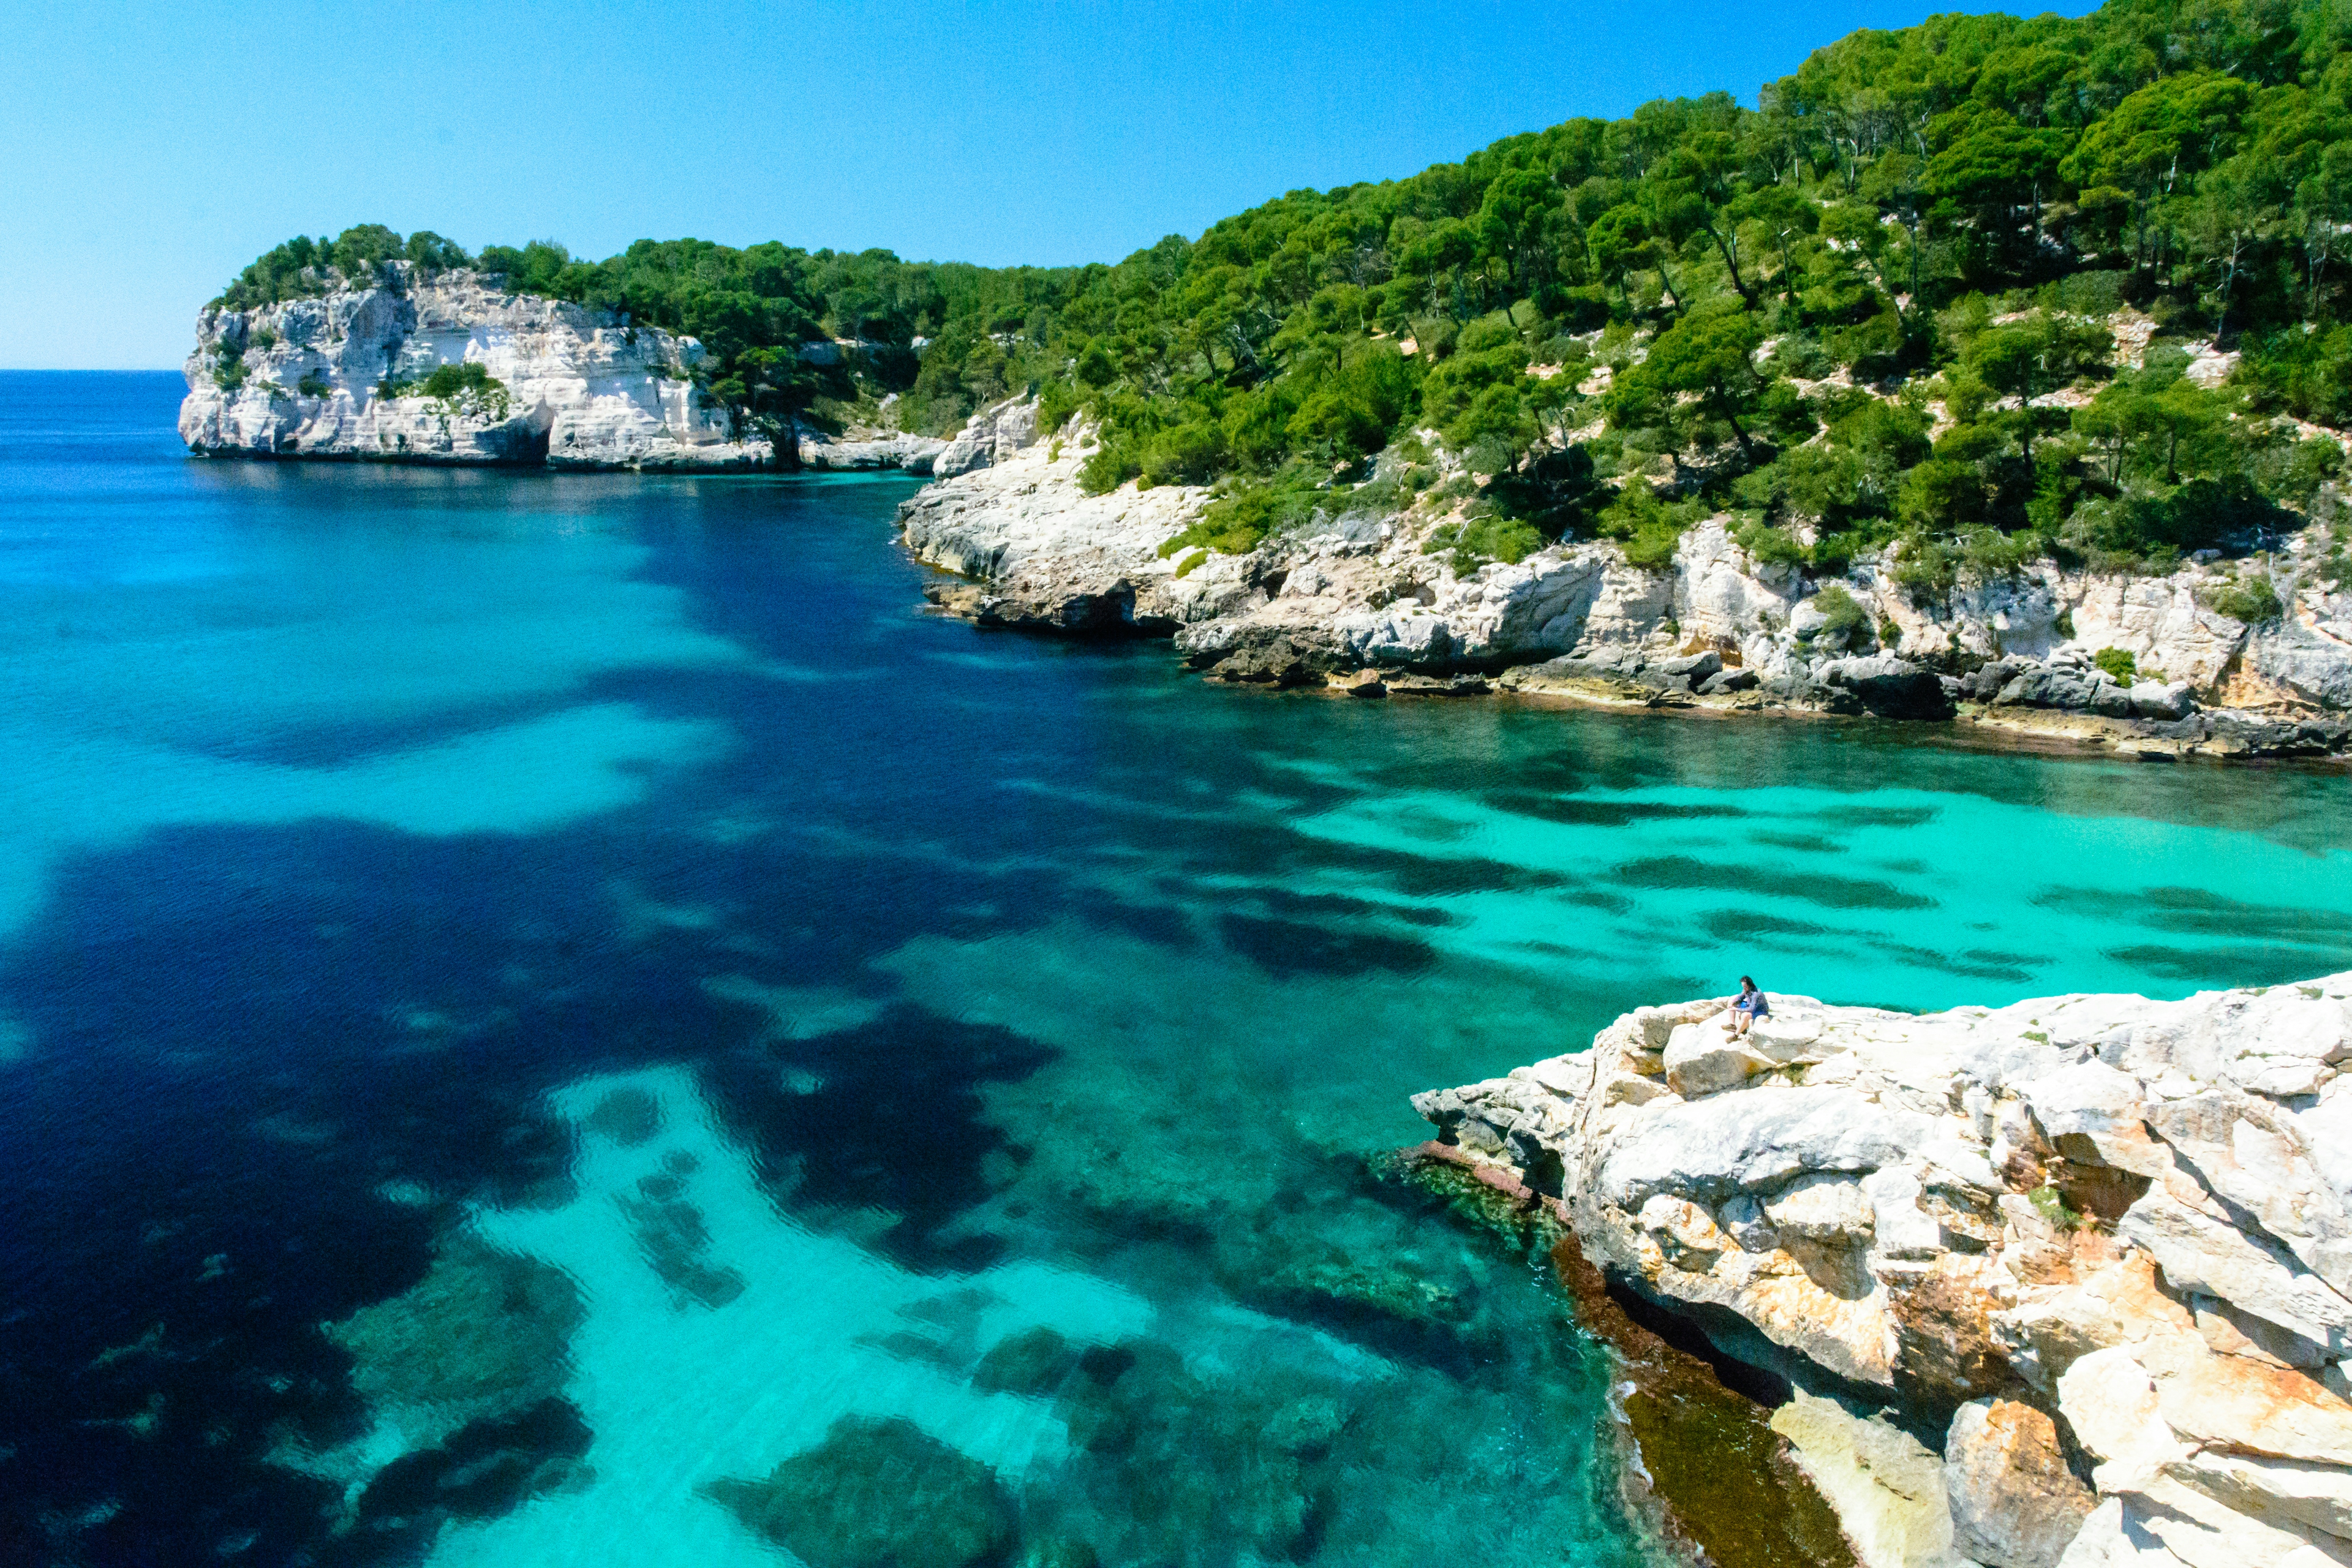 l'acqua cristallina lambisce la costa rocciosa dell'isola di Maiorca